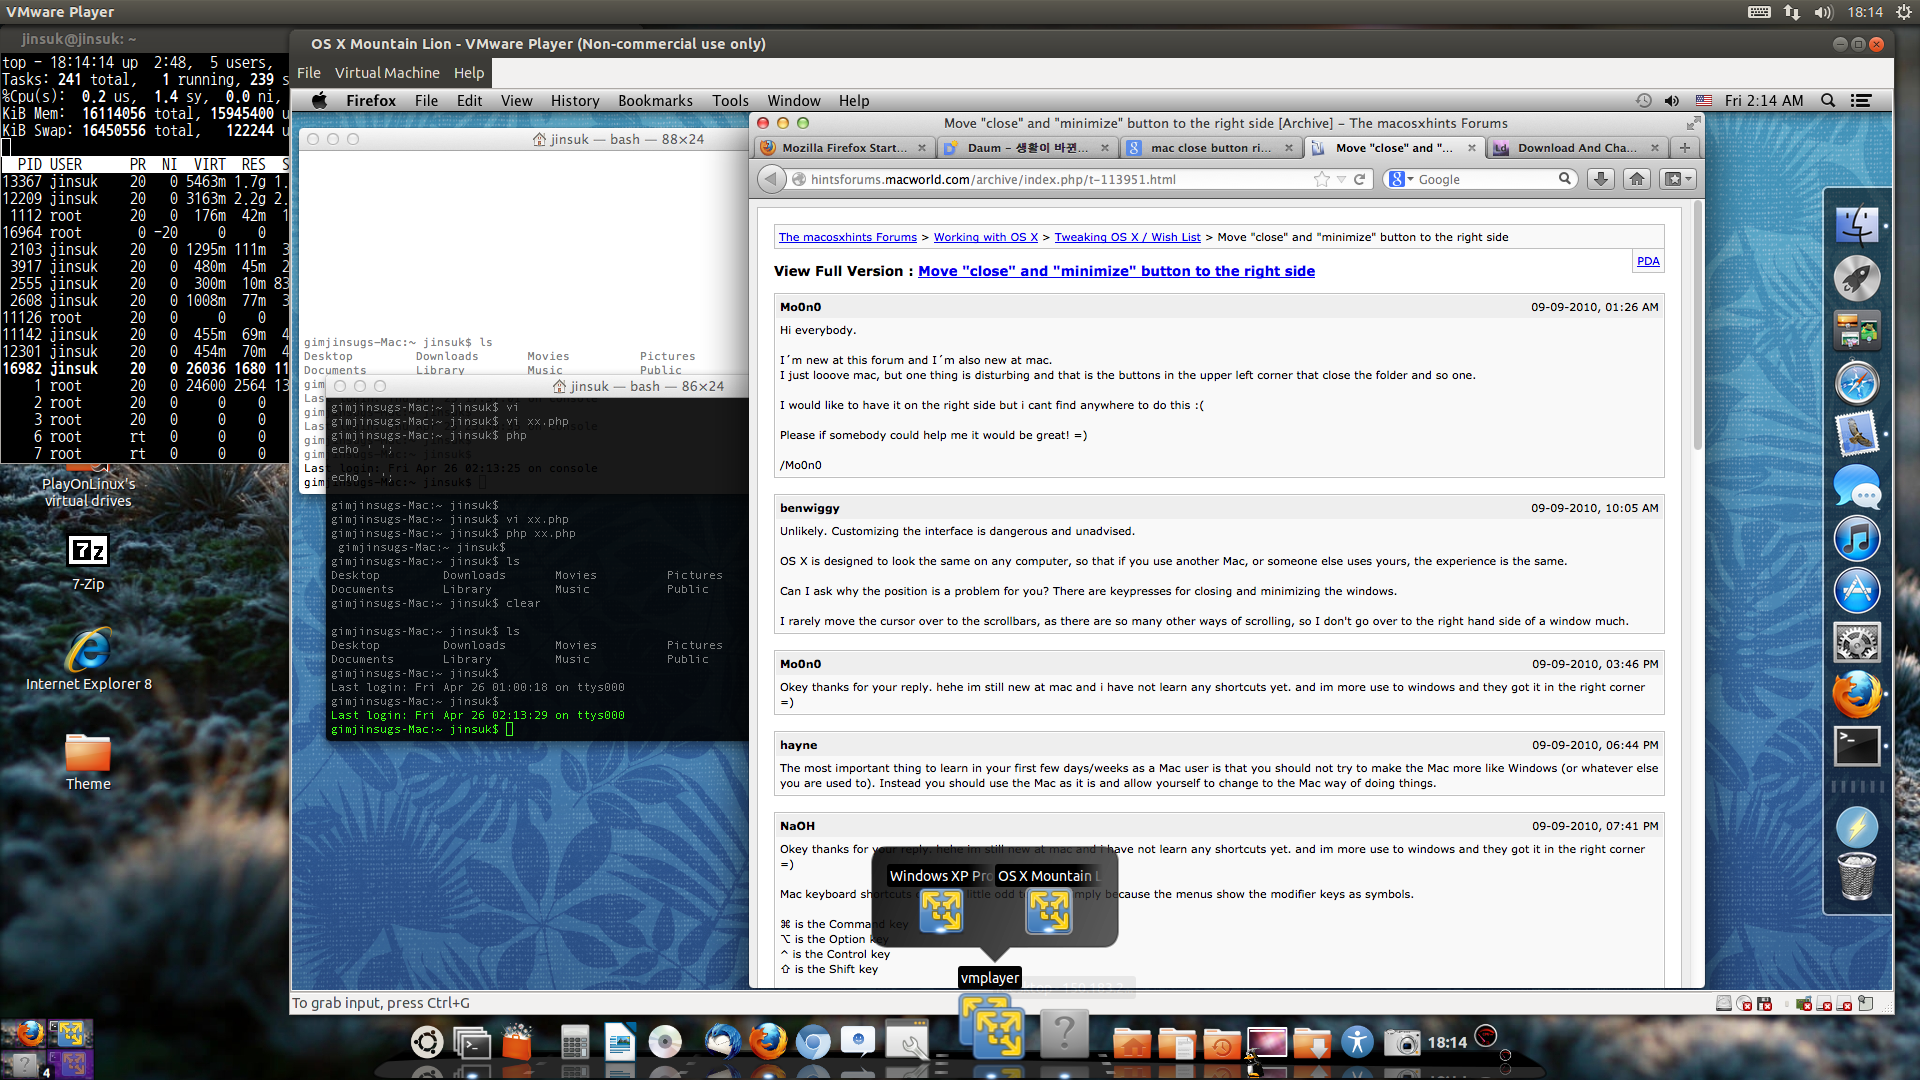 스크린샷, 2013-04-26 18:14:16.png 우분투 12.10에 설치한 맥 OSX 10.8 VM